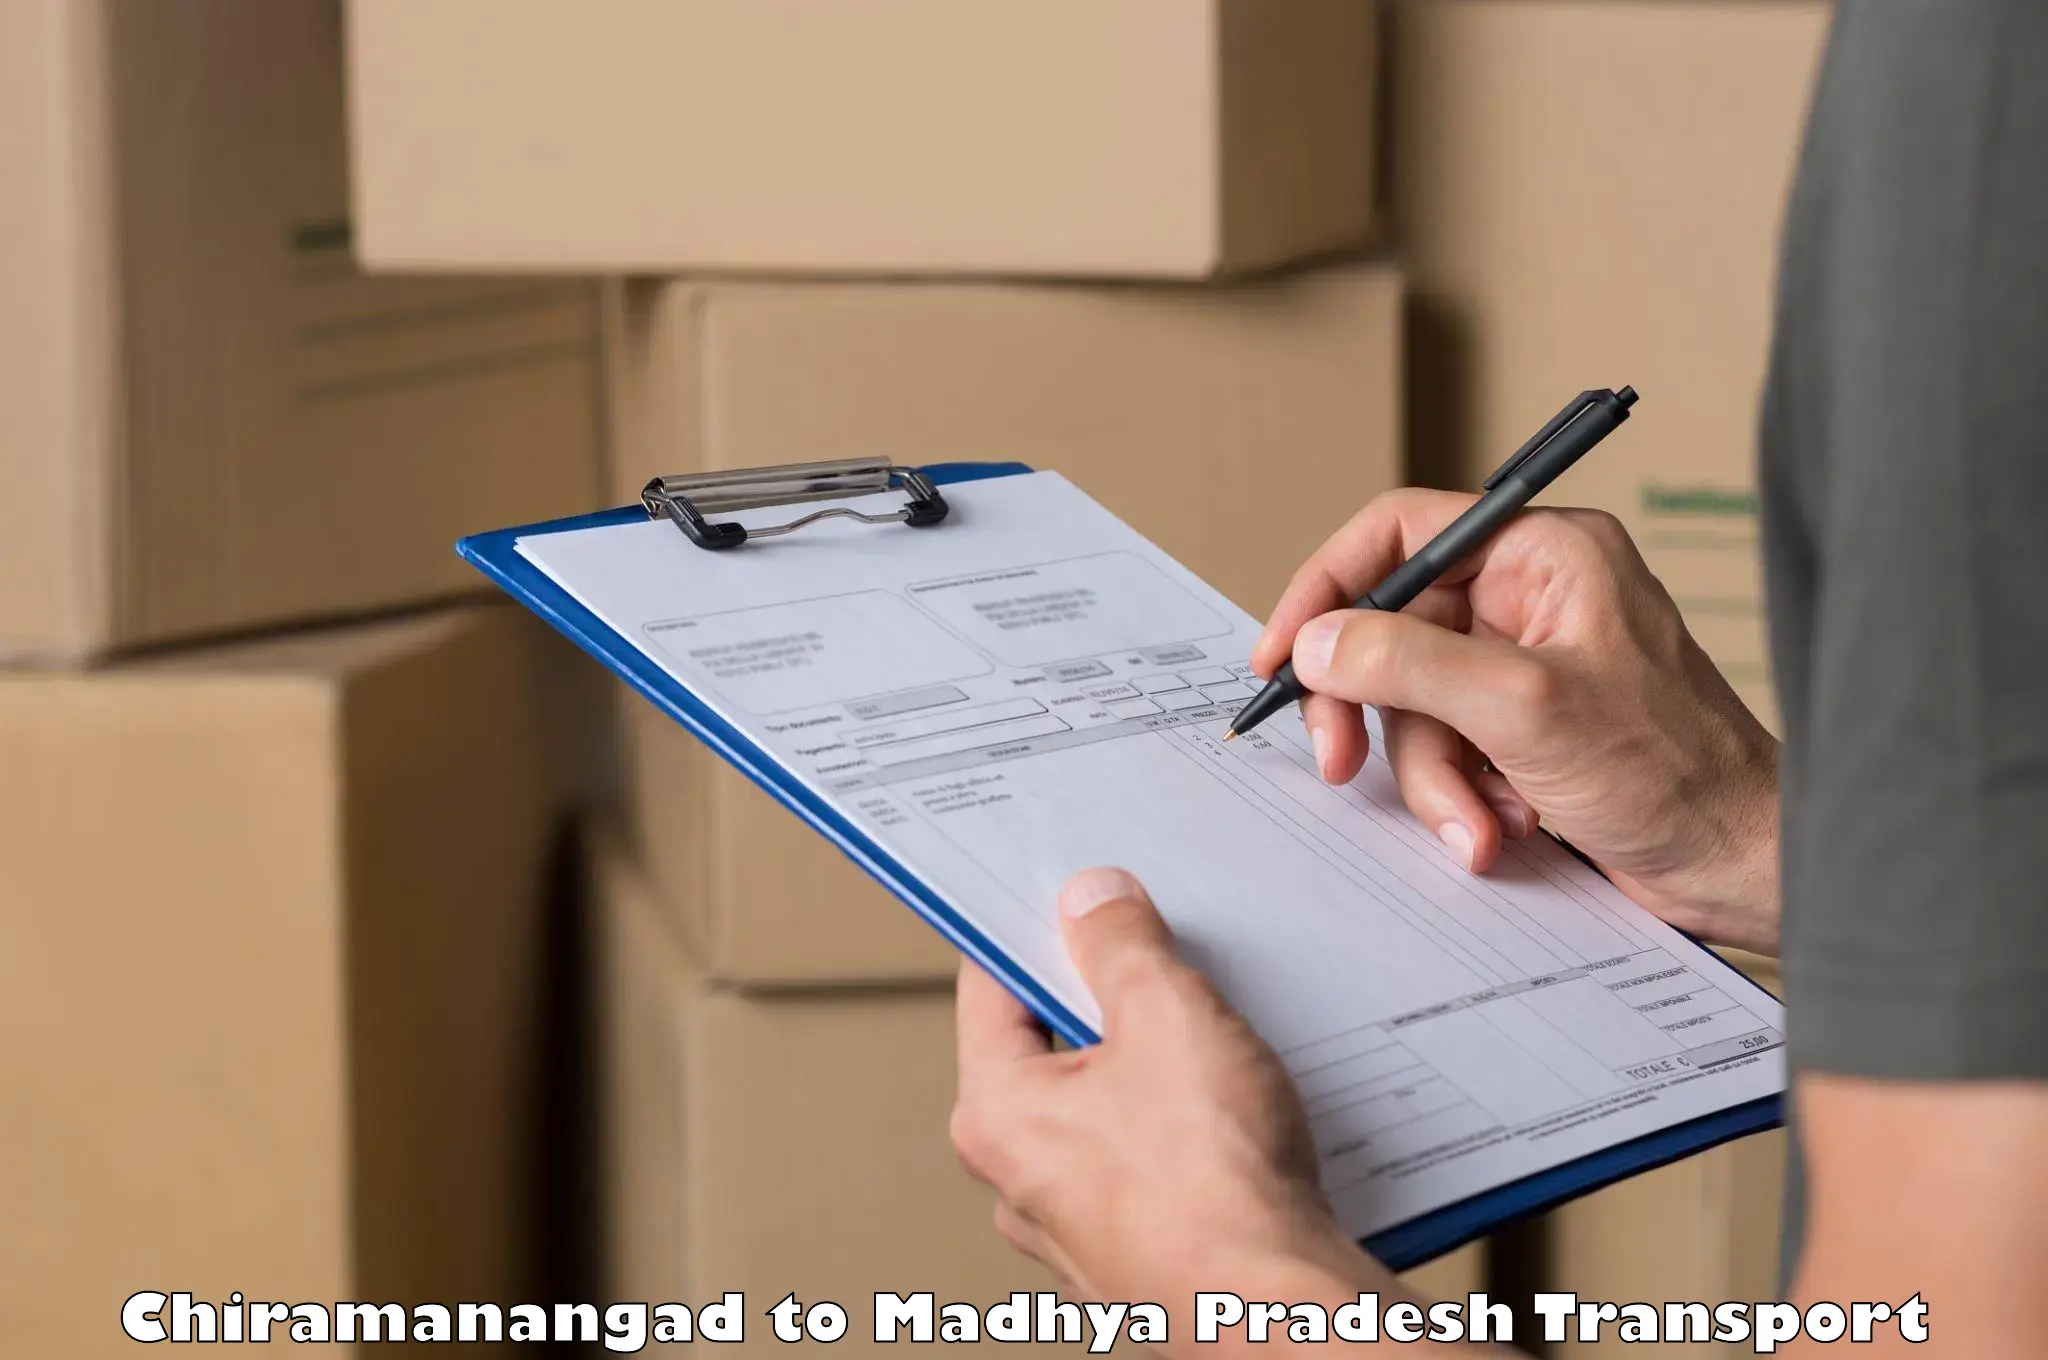 Shipping partner Chiramanangad to Raipur Karchuliyan